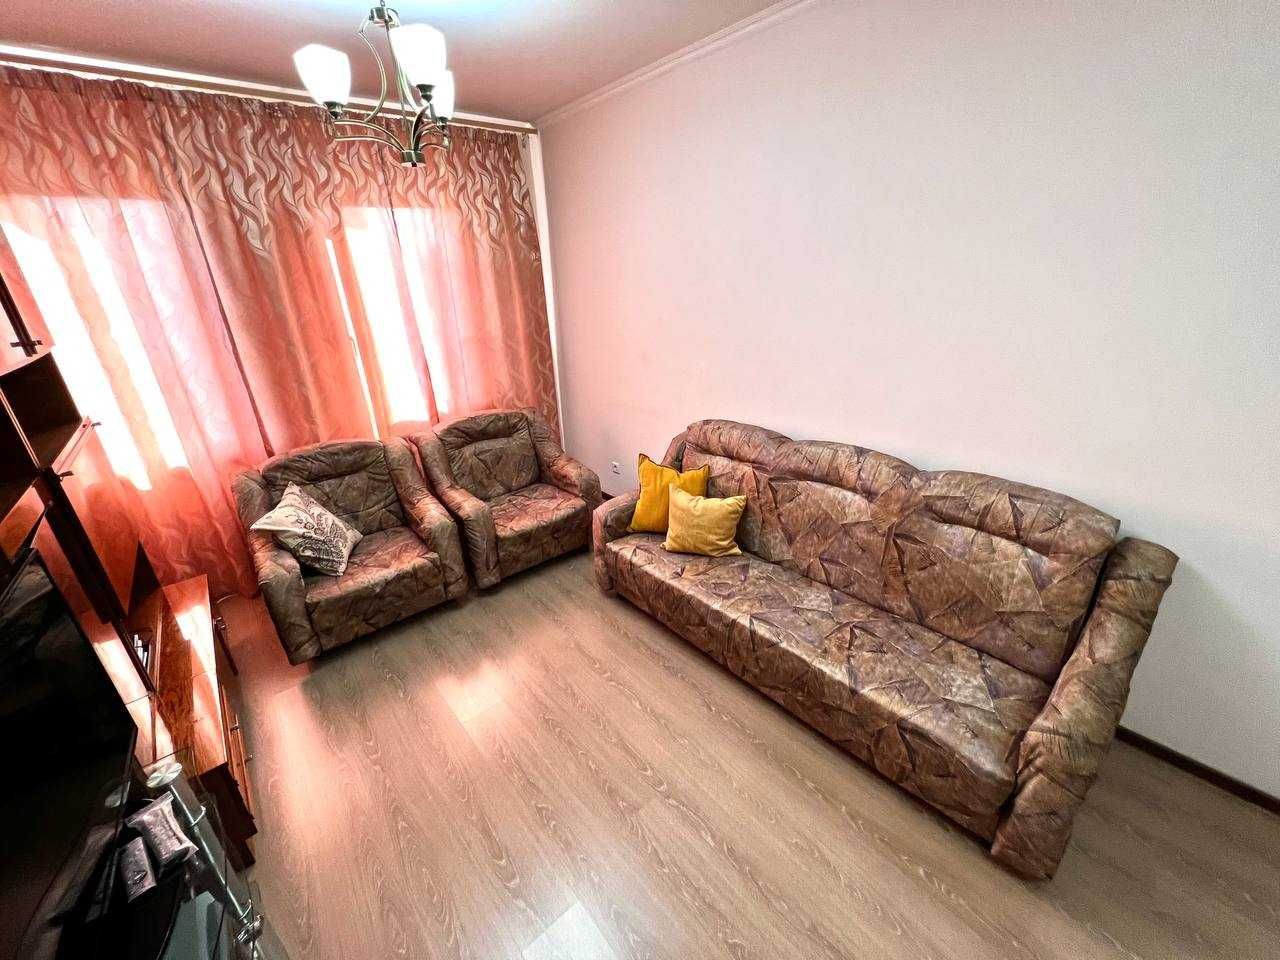 Гостевой диван с креслами